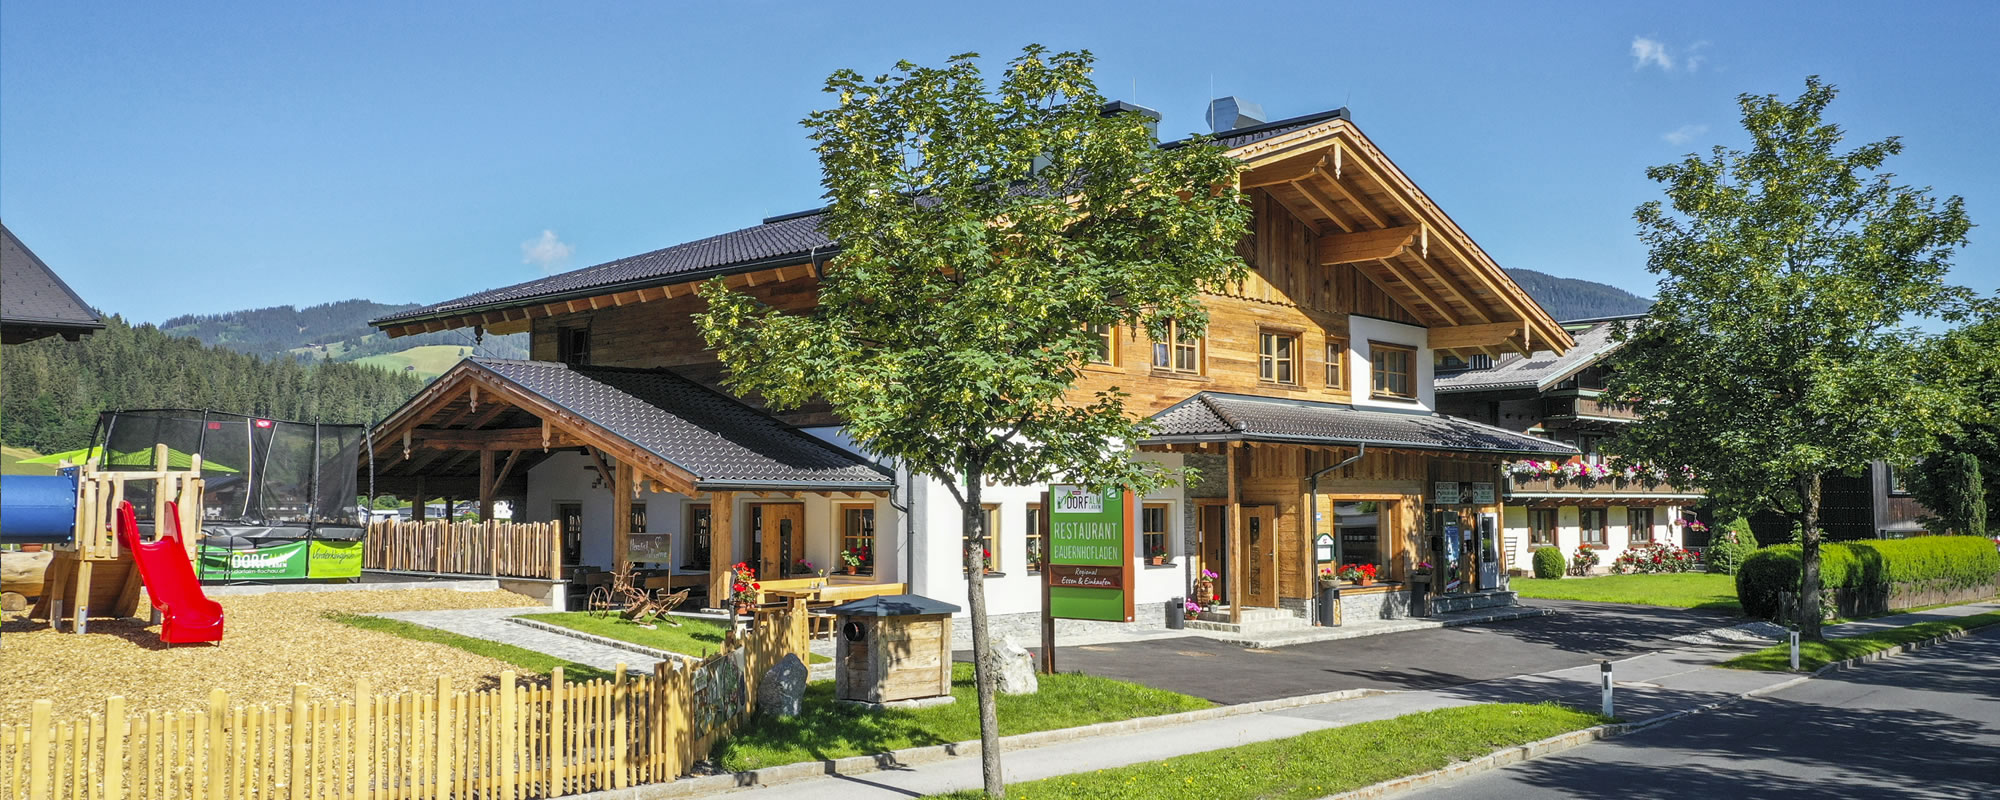 Dorfalm & Dorfladen Flachau - Regional essen, regional einkaufen